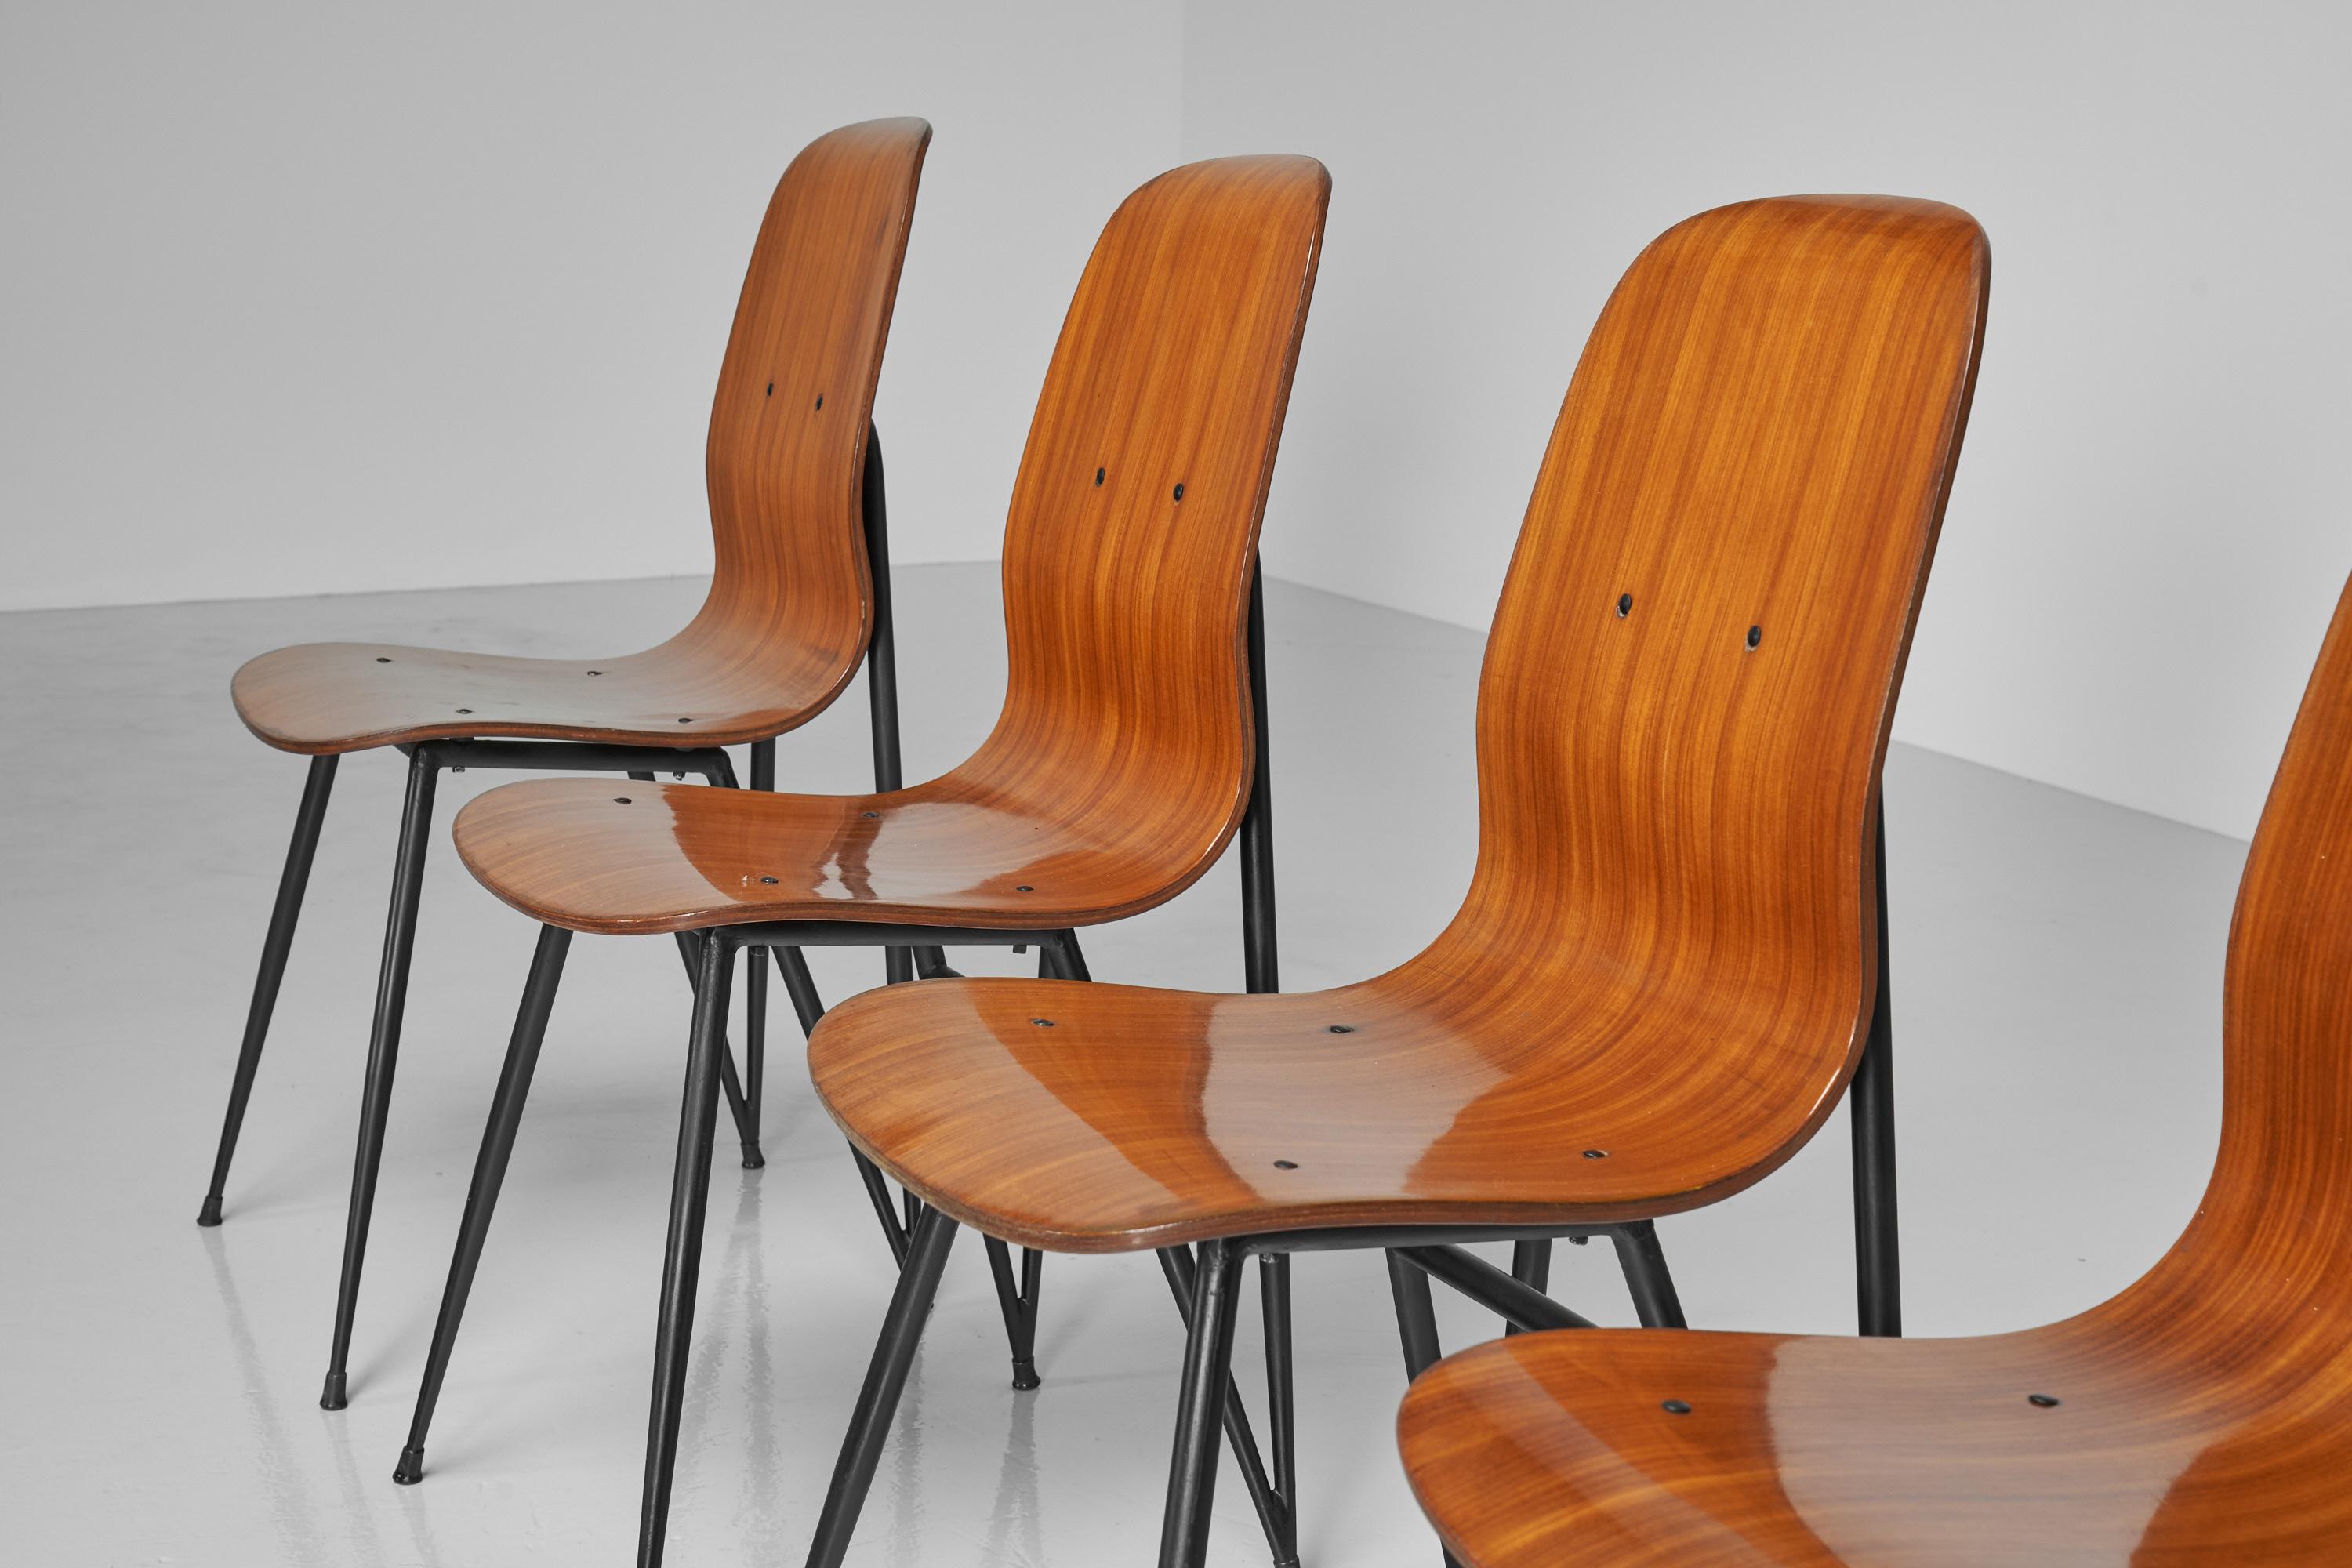 Remarquable ensemble de 6 chaises de salle à manger en contreplaqué conçu par Enzo Strada et fabriqué par Mobili Barovero, Italie 1950. Ces chaises ont une forme très agréable et dynamique. Elles sont de bonne taille et le dos plus haut offre